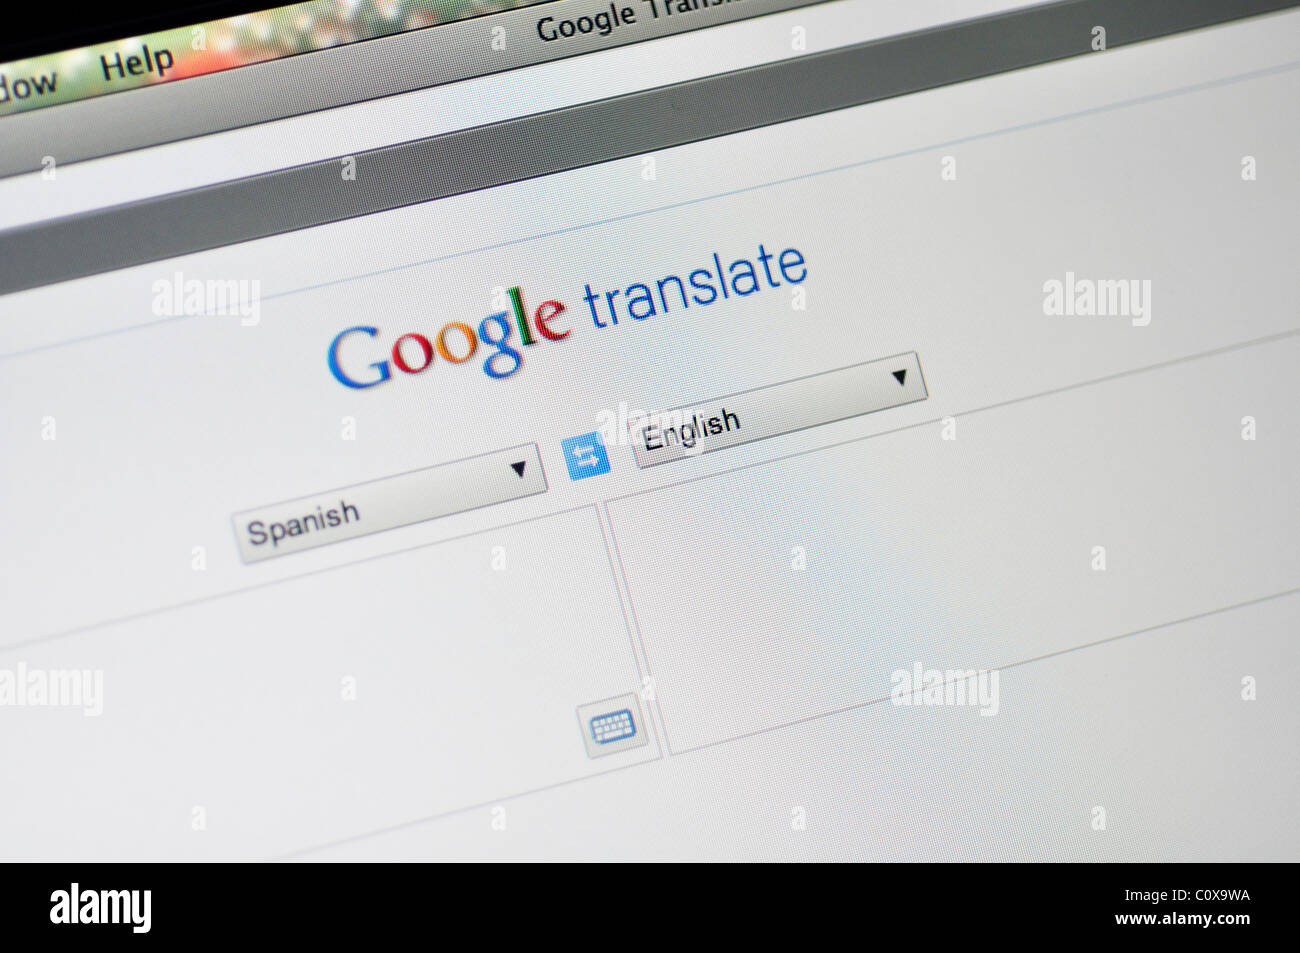 Site web Google translate - traduire les langues étrangères Banque D'Images